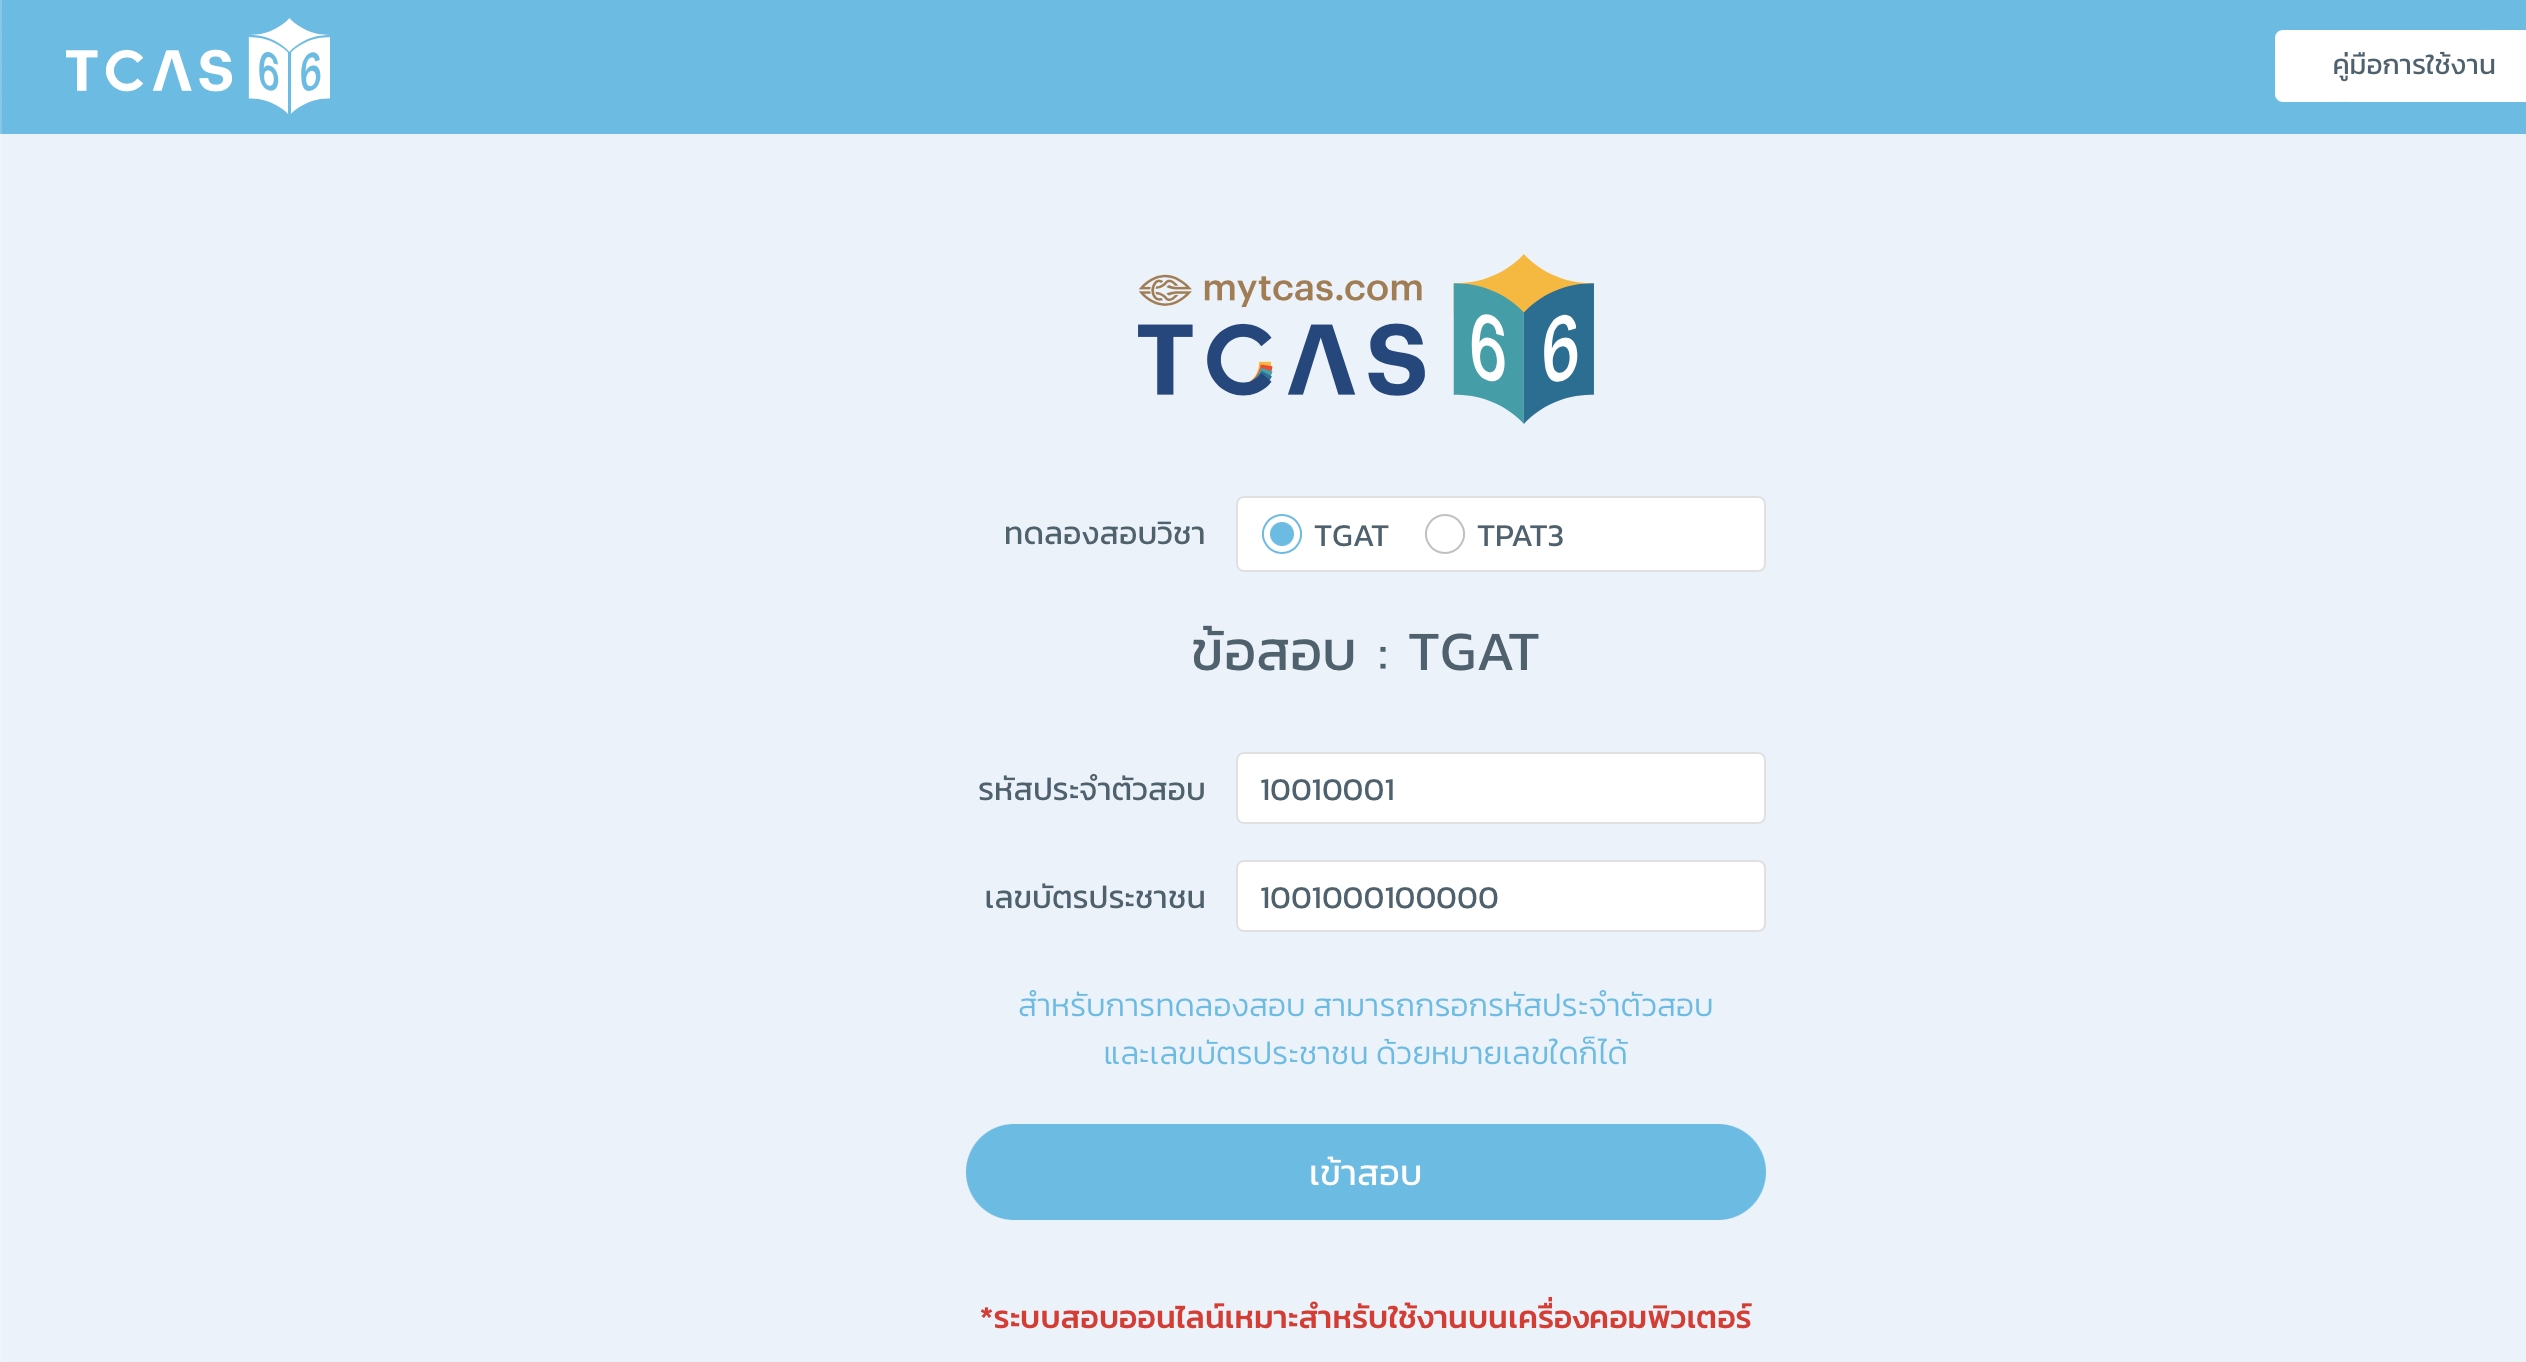 ทปอ. #TCAS66 เปิดให้ทดสอบ TGAT TPAT2-5 ทั้งระบบ Paper / Computer แล้ว!